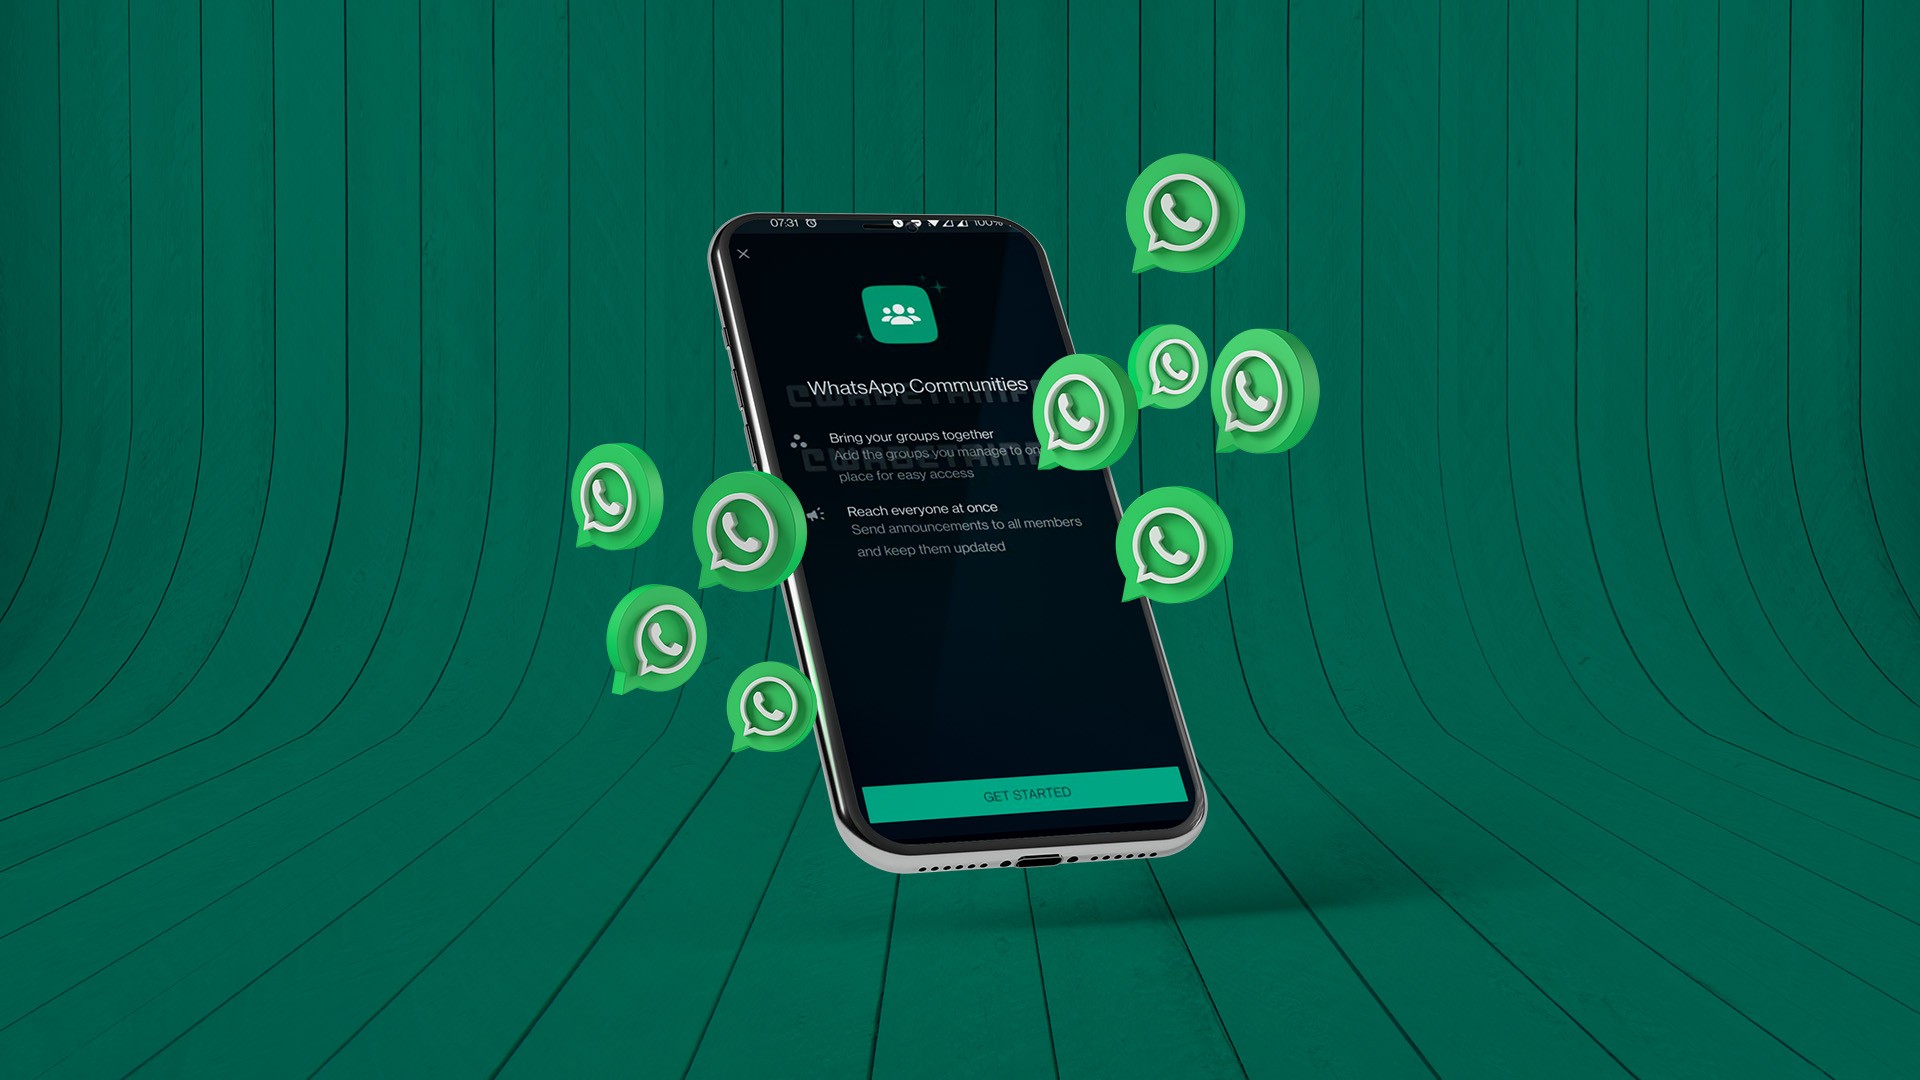 Inovação no WhatsApp vai otimizar a criação de grupos; veja como